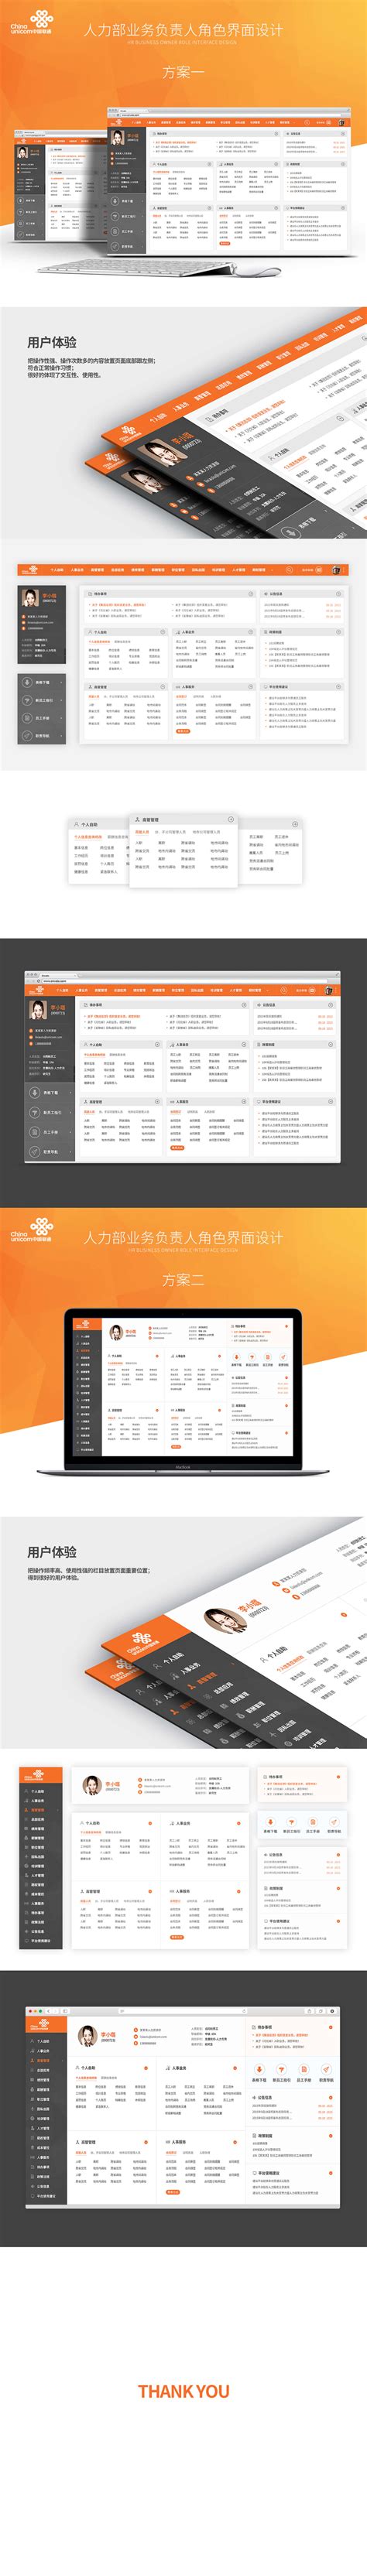 中国联通HR网上服务平台 - 网站建设 - 邦米